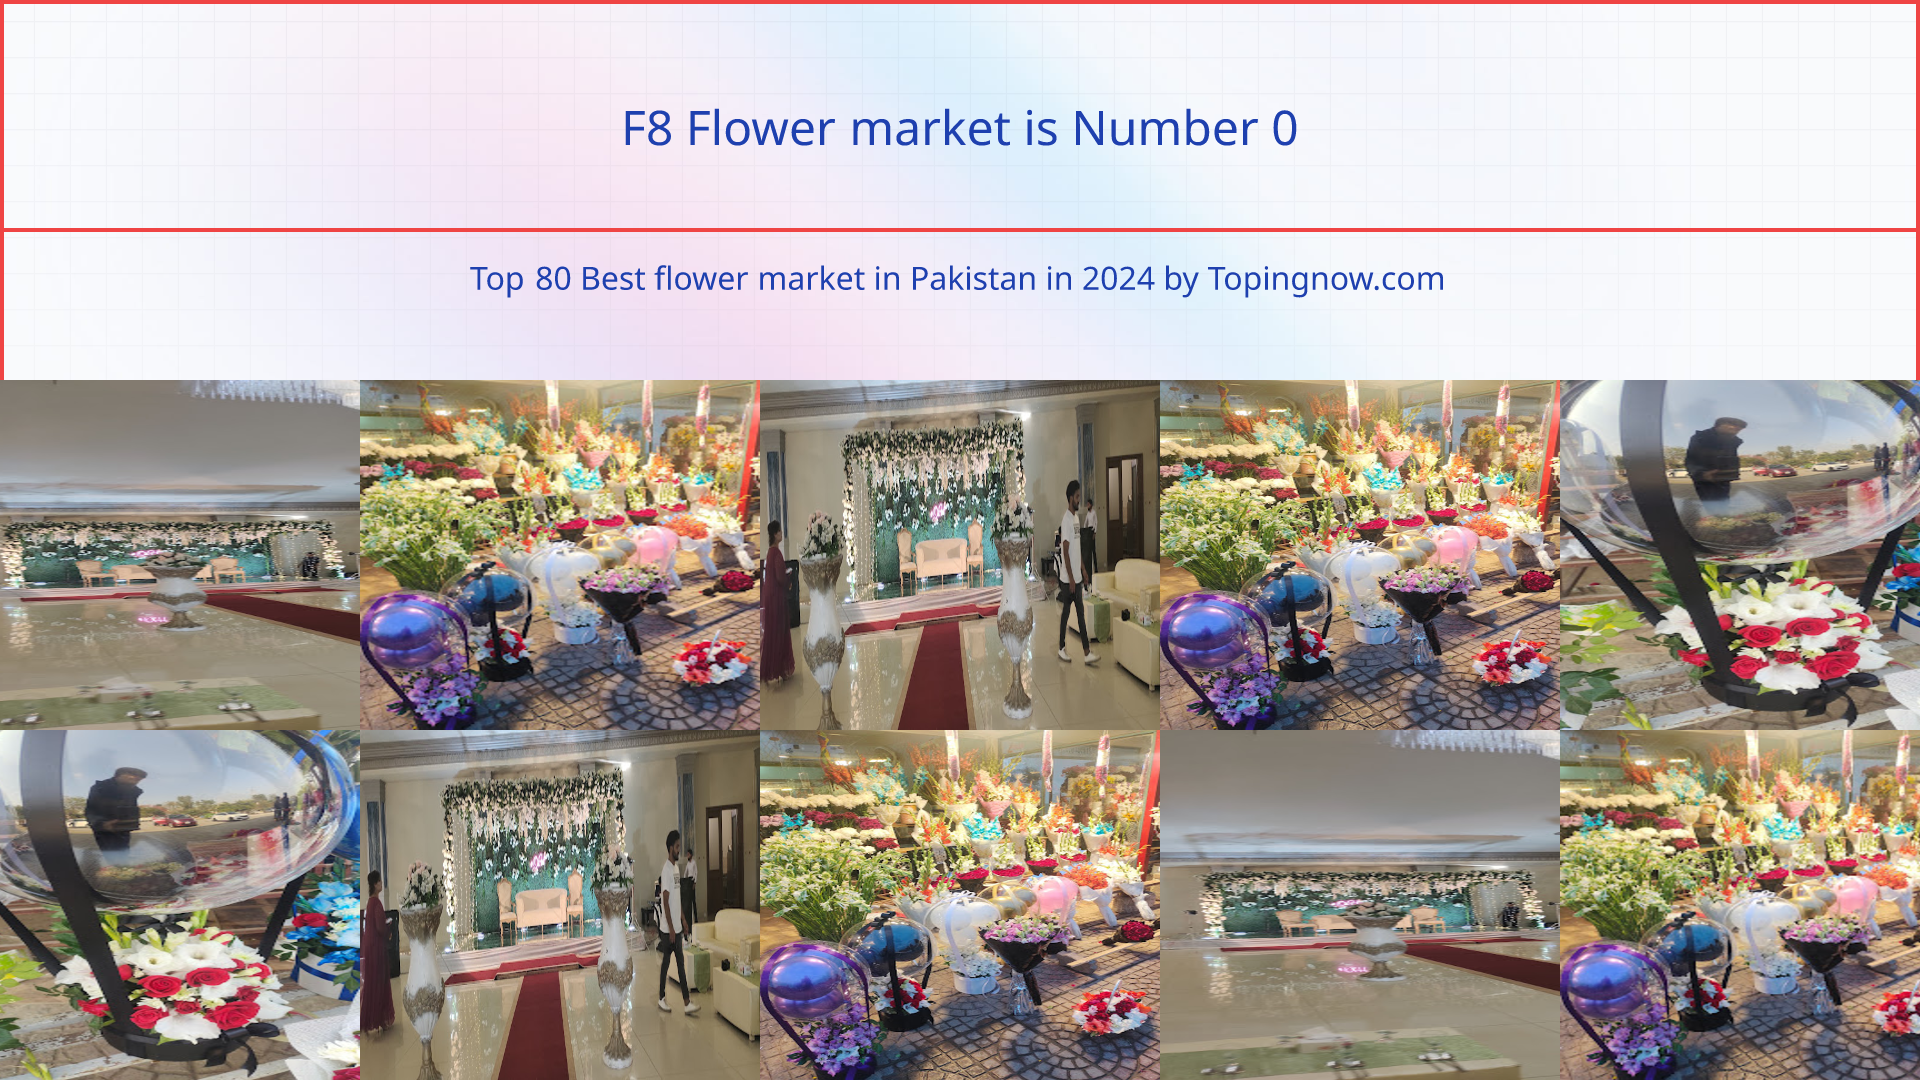 F8 Flower market: Top 80 Best flower market in Pakistan in 2024